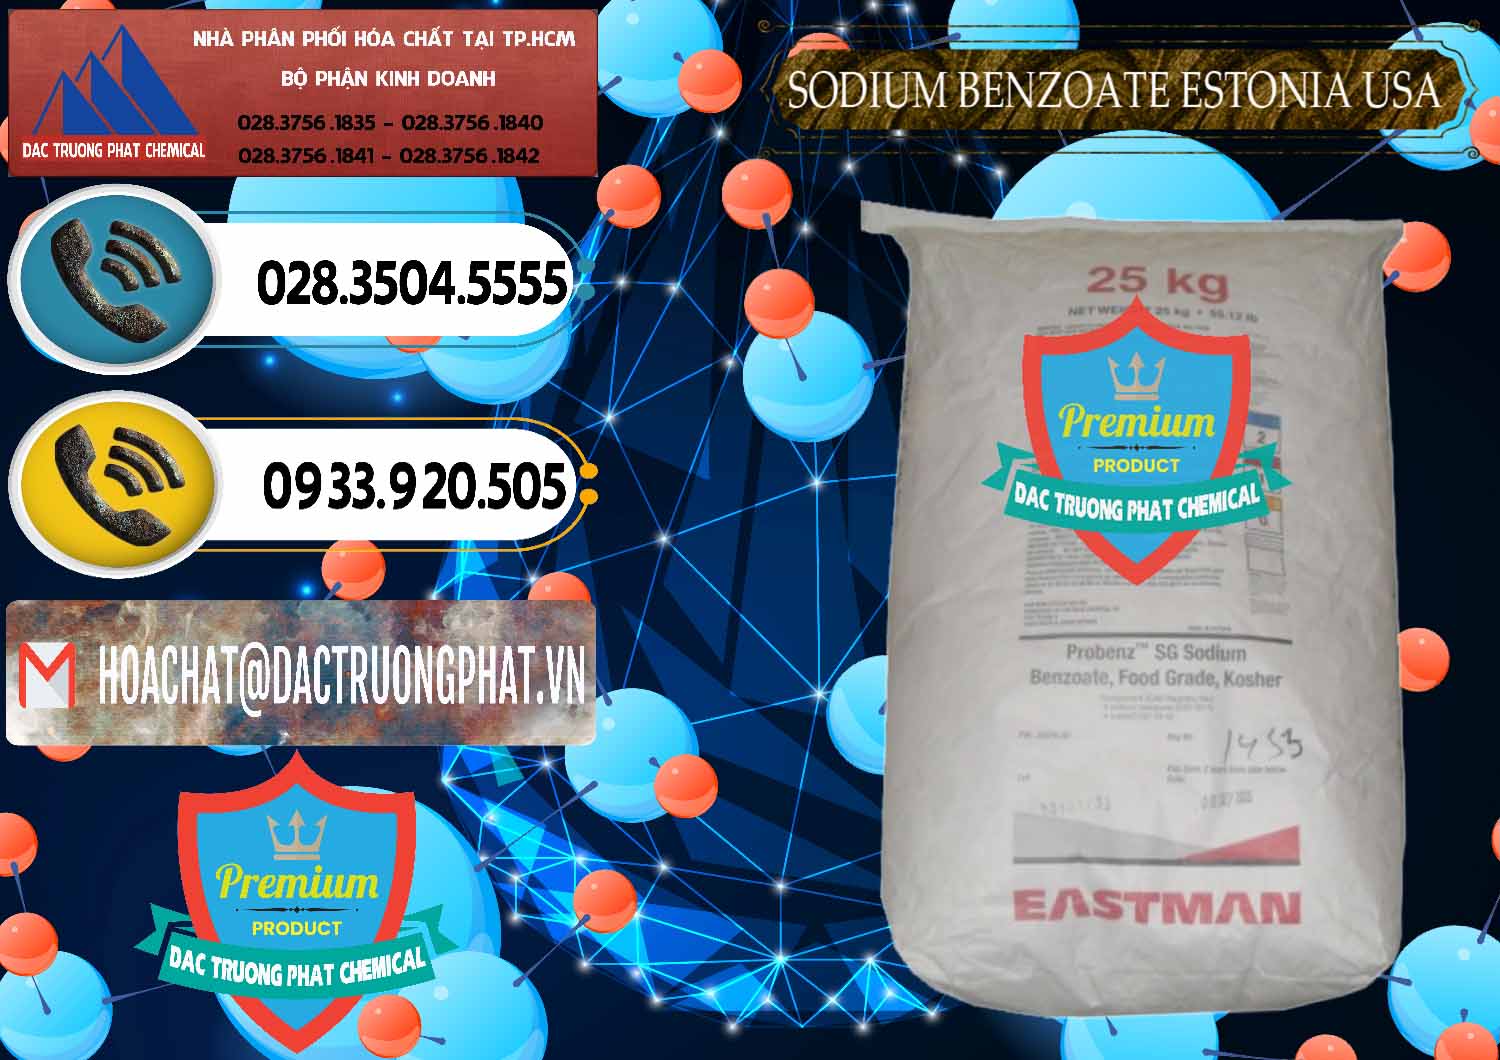 Nơi phân phối _ bán Sodium Benzoate - Mốc Bột Estonia Mỹ USA - 0468 - Đơn vị chuyên kinh doanh và phân phối hóa chất tại TP.HCM - hoachatdetnhuom.vn